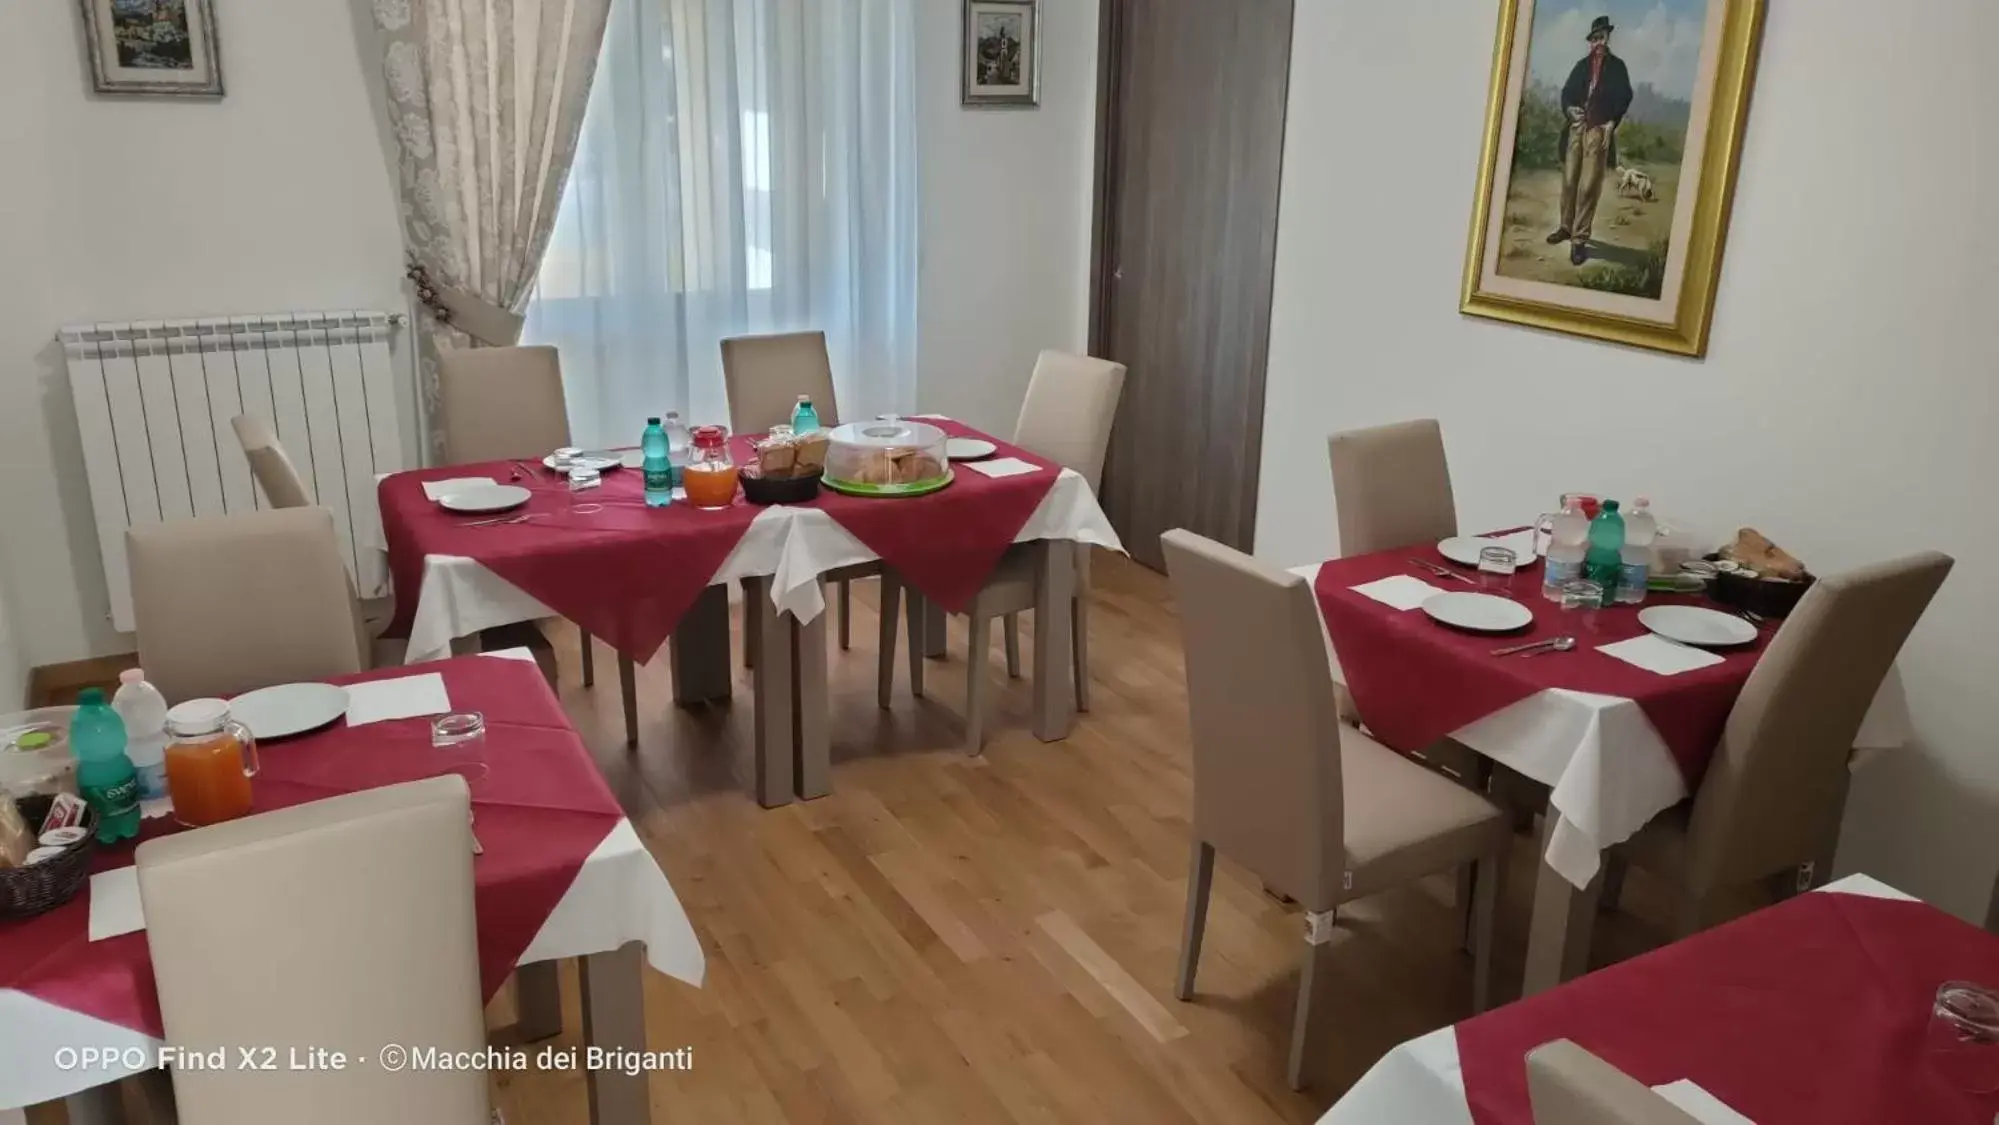 Dining area, Restaurant/Places to Eat in Agriturismo Macchia dei briganti - b&b